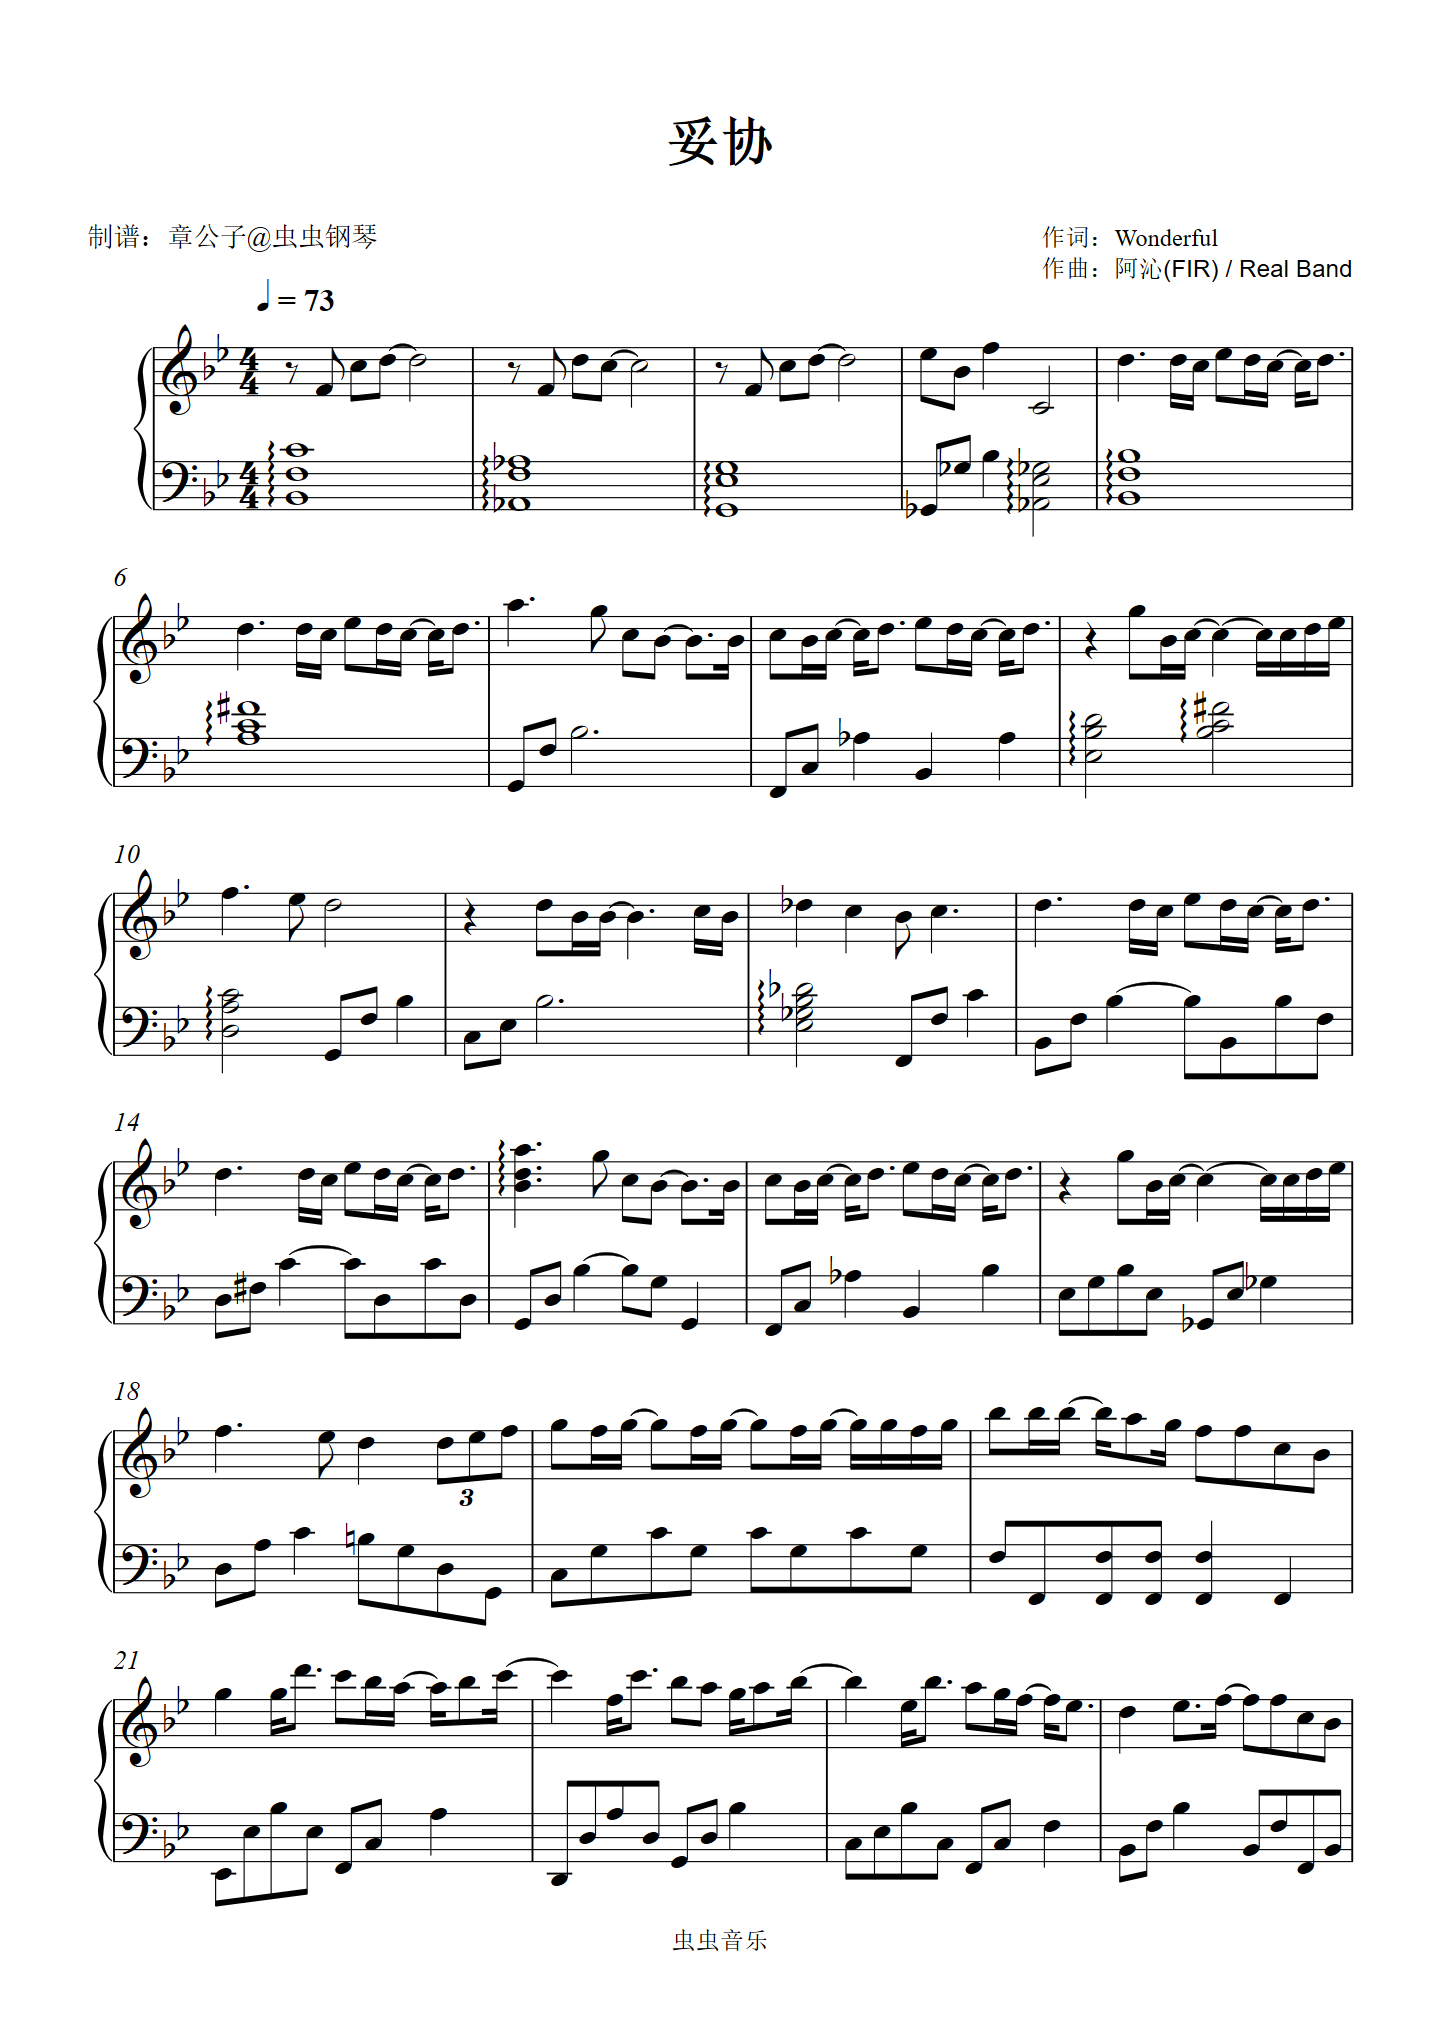 妥协钢琴曲谱，于斯课堂精心出品。于斯曲谱大全，钢琴谱，简谱，五线谱尽在其中。